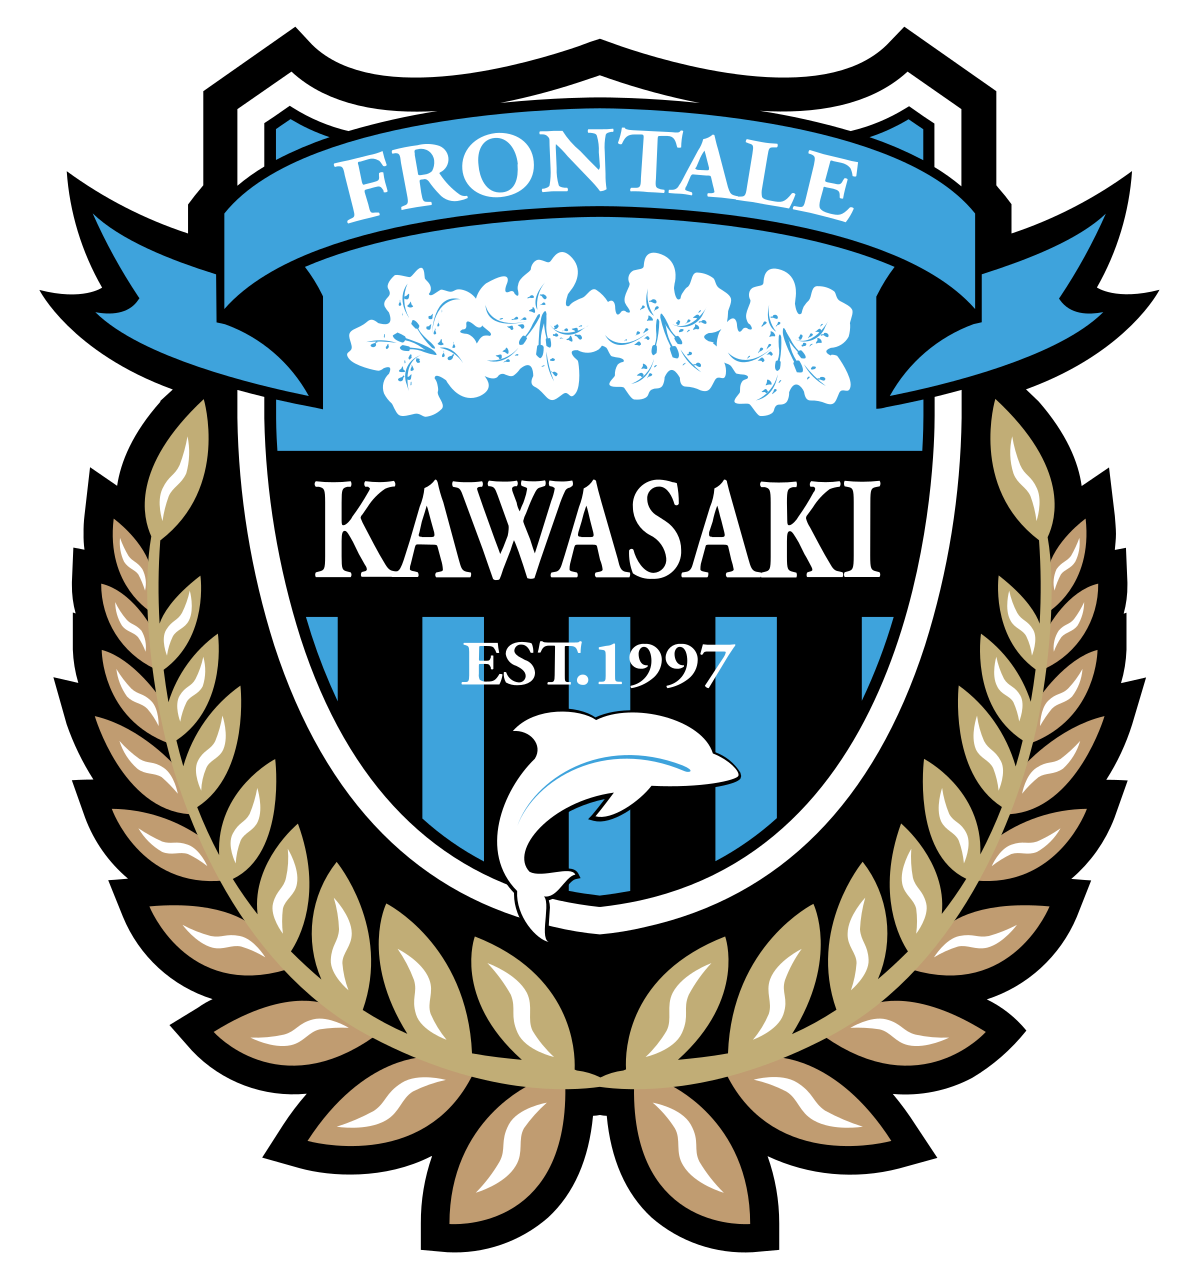 øve sig sund fornuft golf Kawasaki Frontale - Wikipedia